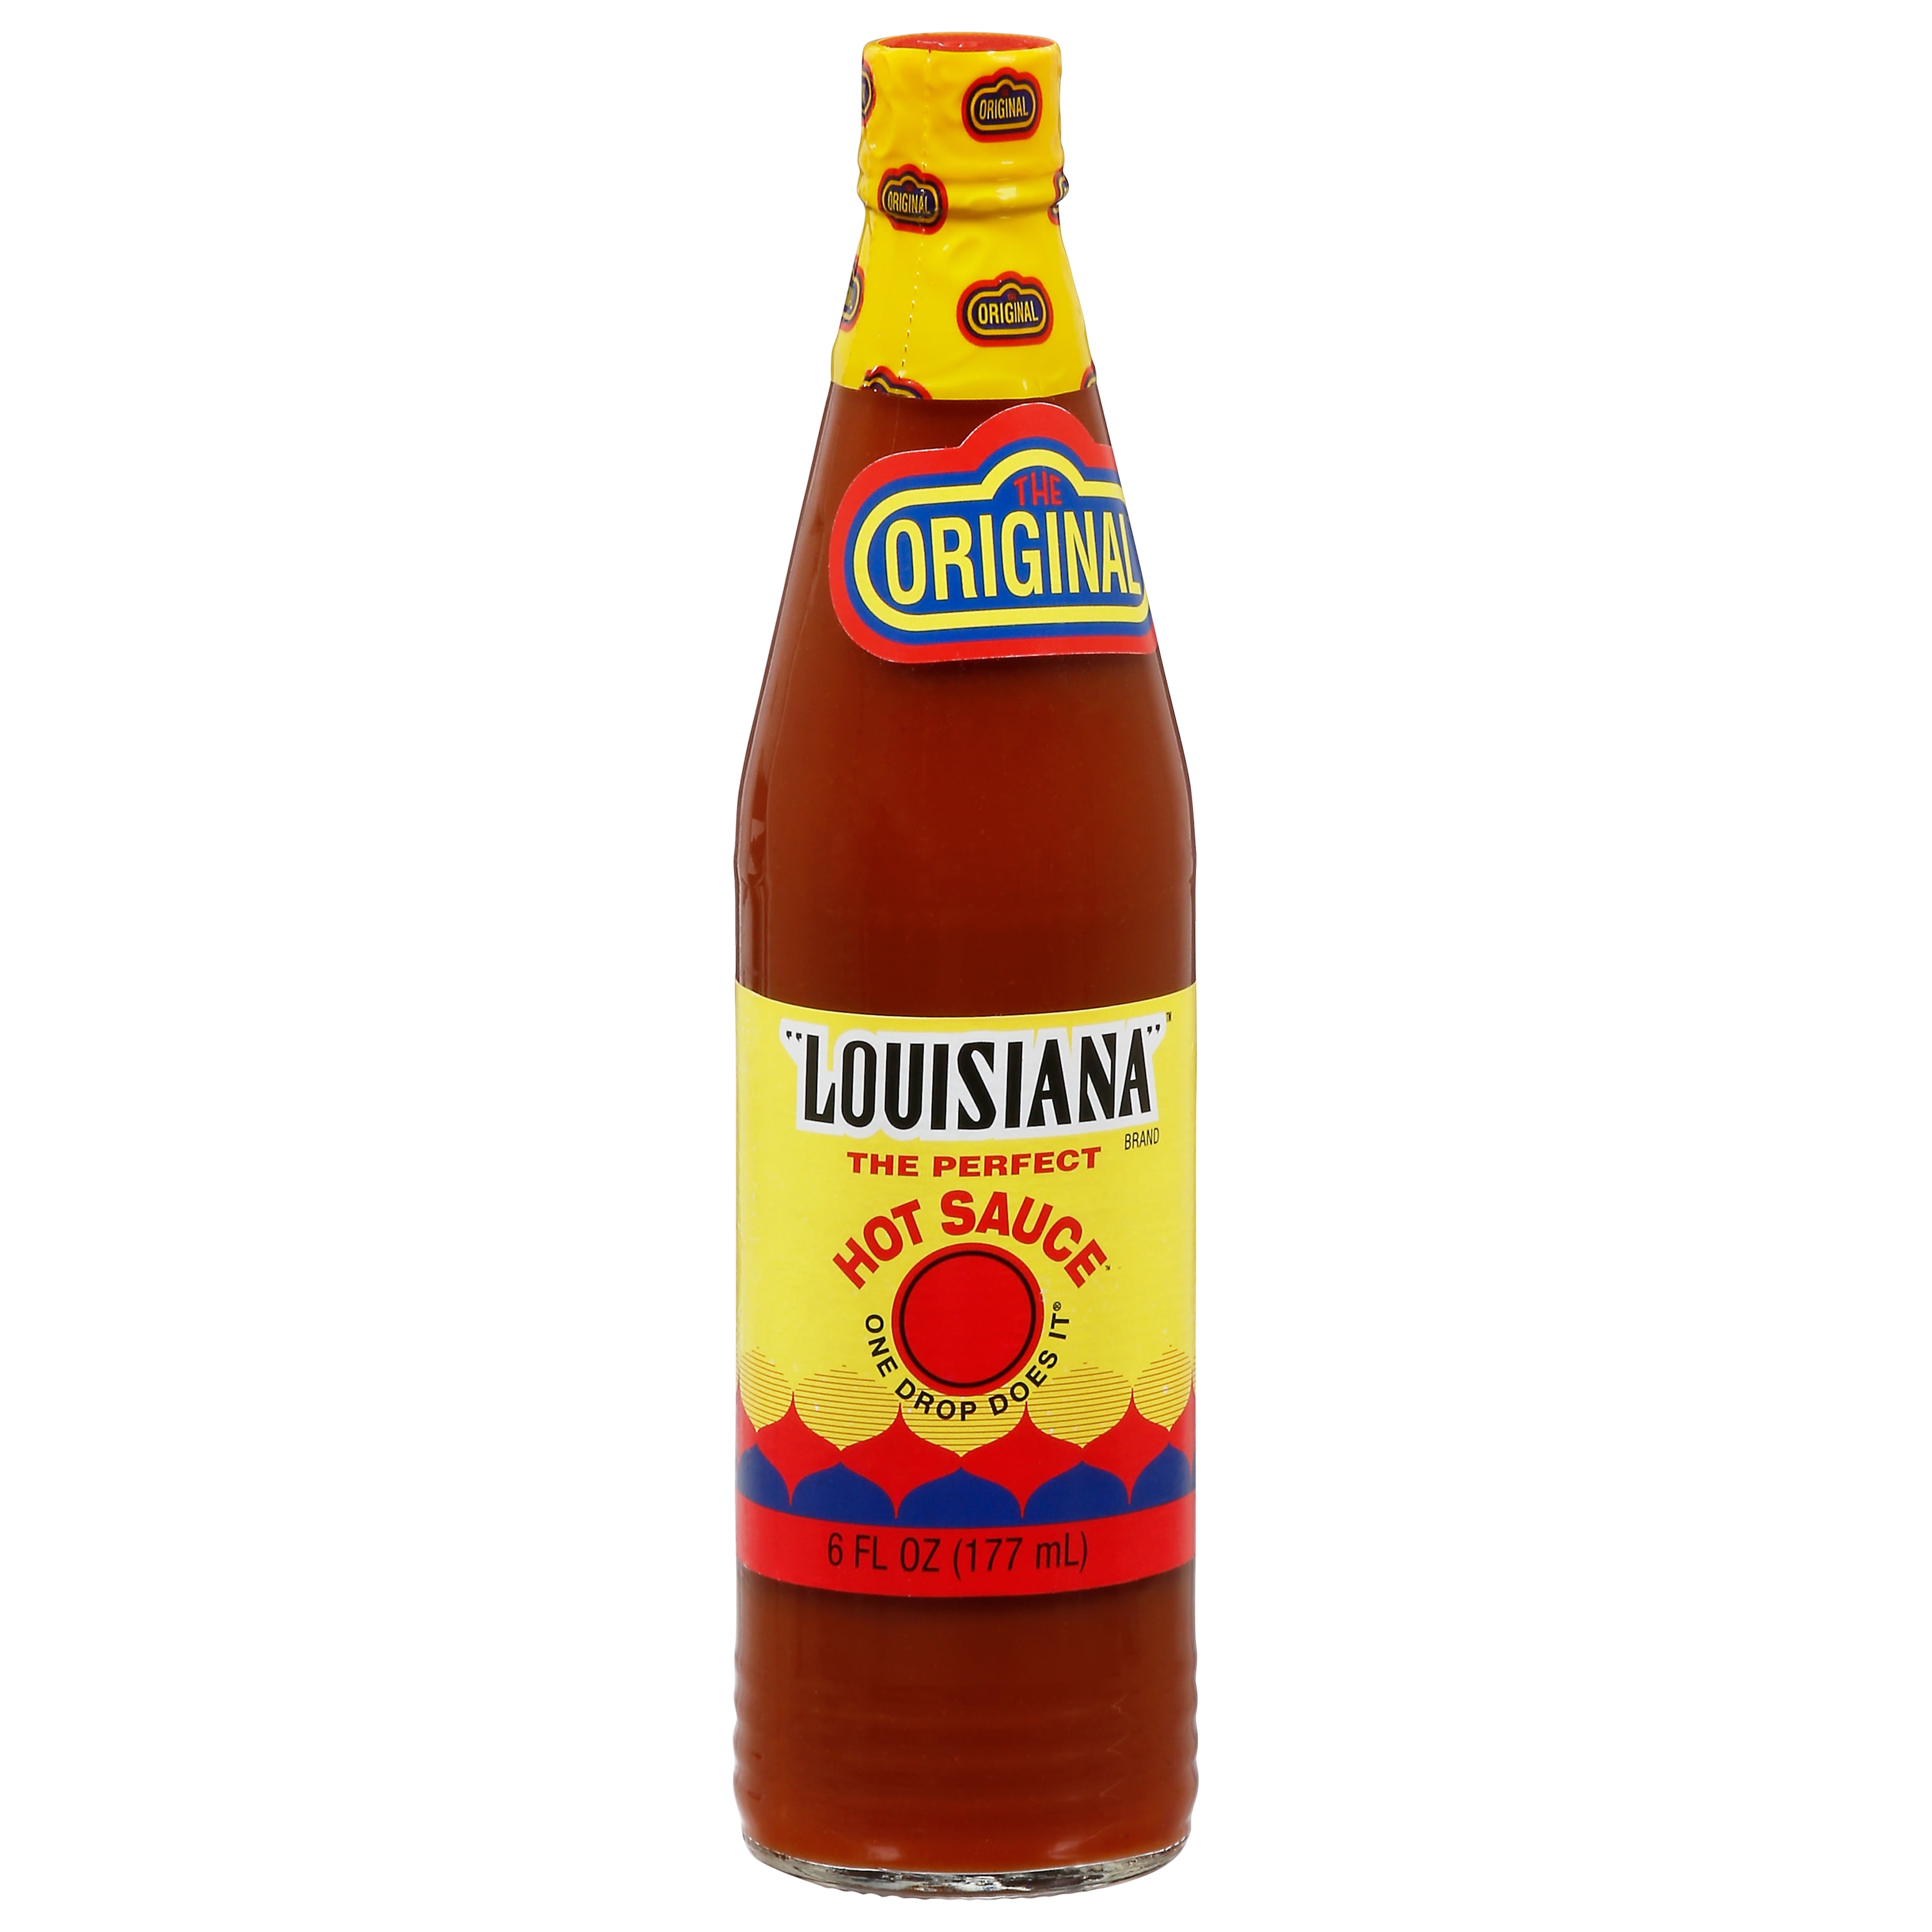 Louisiana+6oz+The+Hot+Sauce+%26+3oz+Habanero+One+Drop+Fiery+BFR